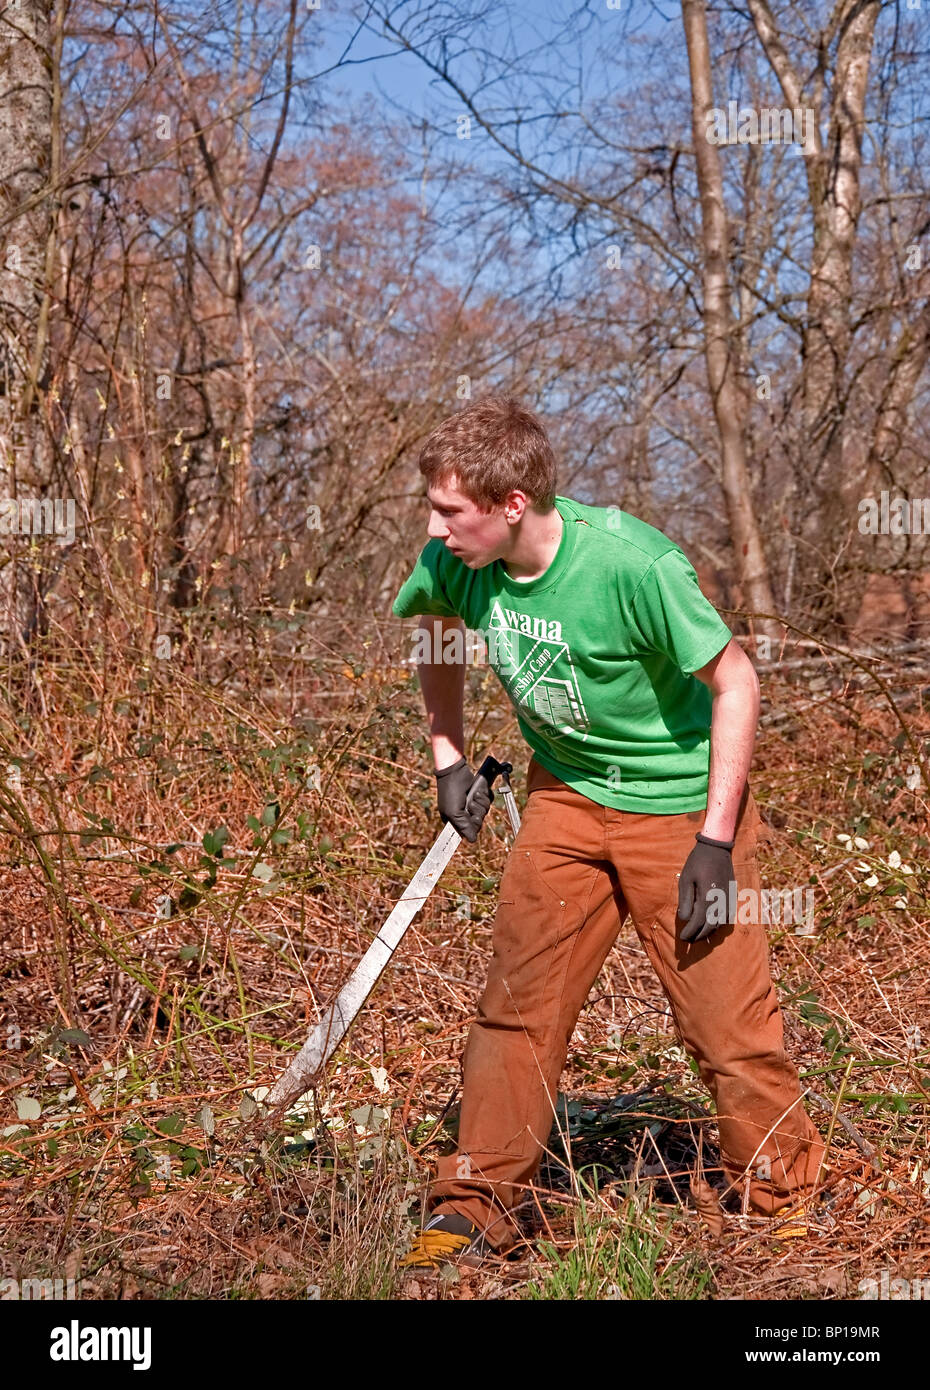 Este joven hombre caucásico en veintitantos años, está trabajando duro para limpiar el cepillo de la tierra con un machete cuchillo. Foto de stock